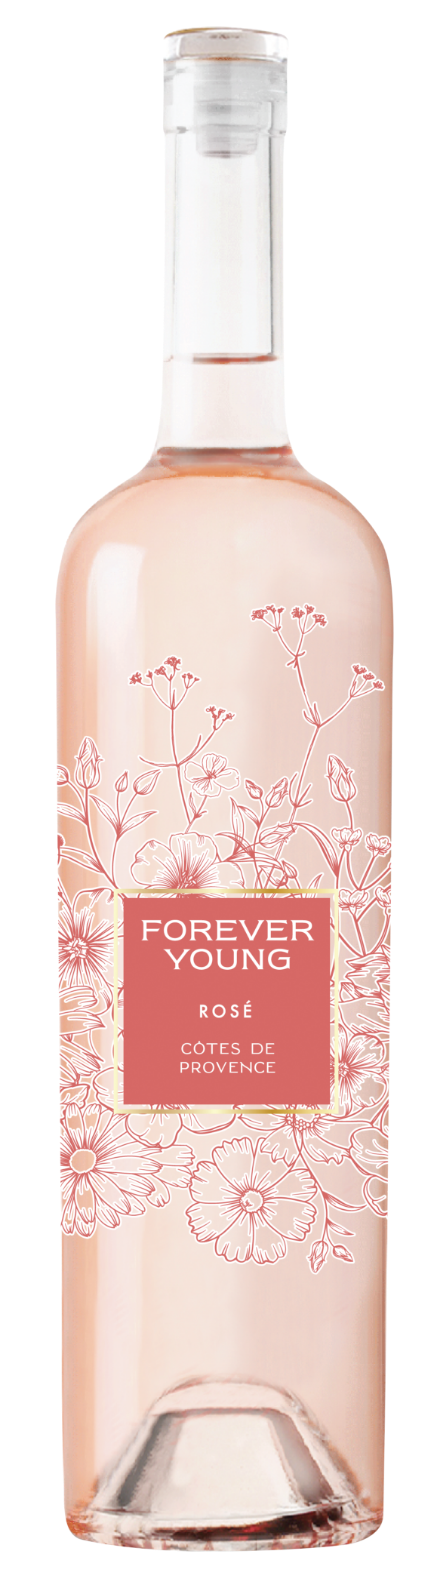 Forever Young Côtes de Provence Rosé